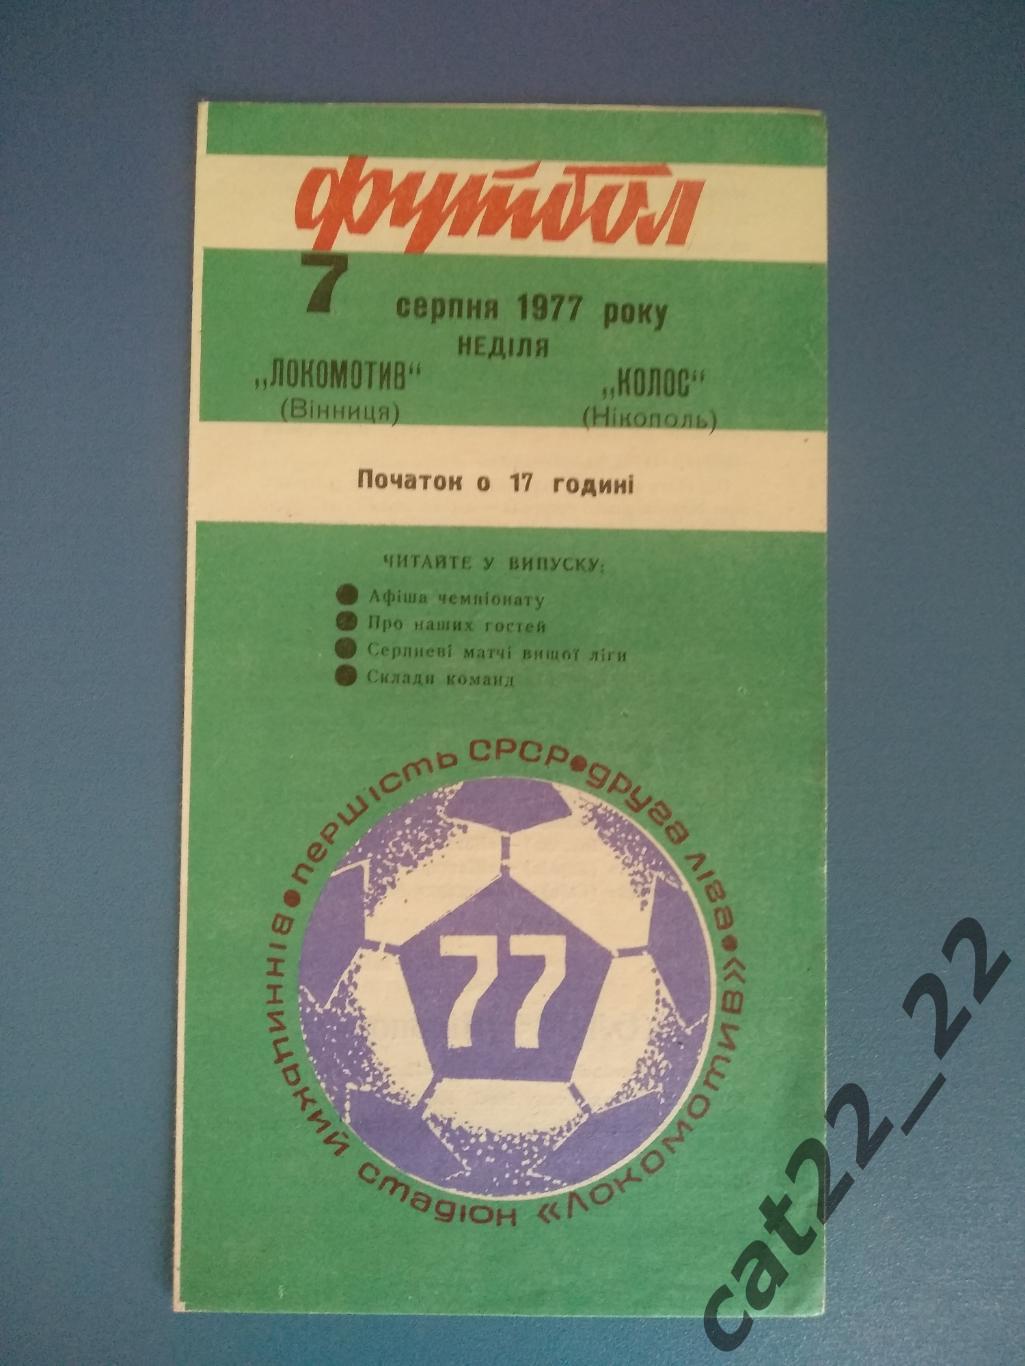 Локомотив Винница - Колос Никополь 1977